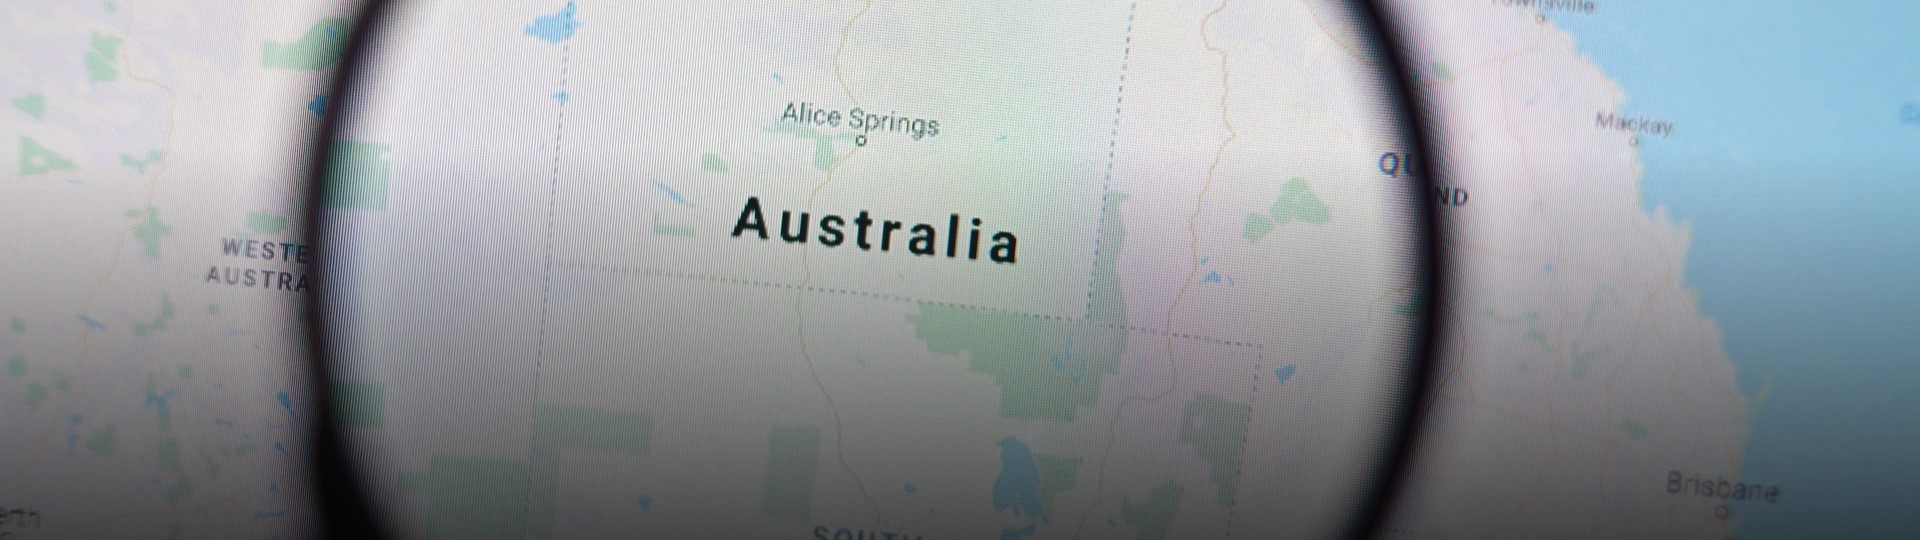 Nebude-li v Austrálii fungovat Google, pomůže Microsoft